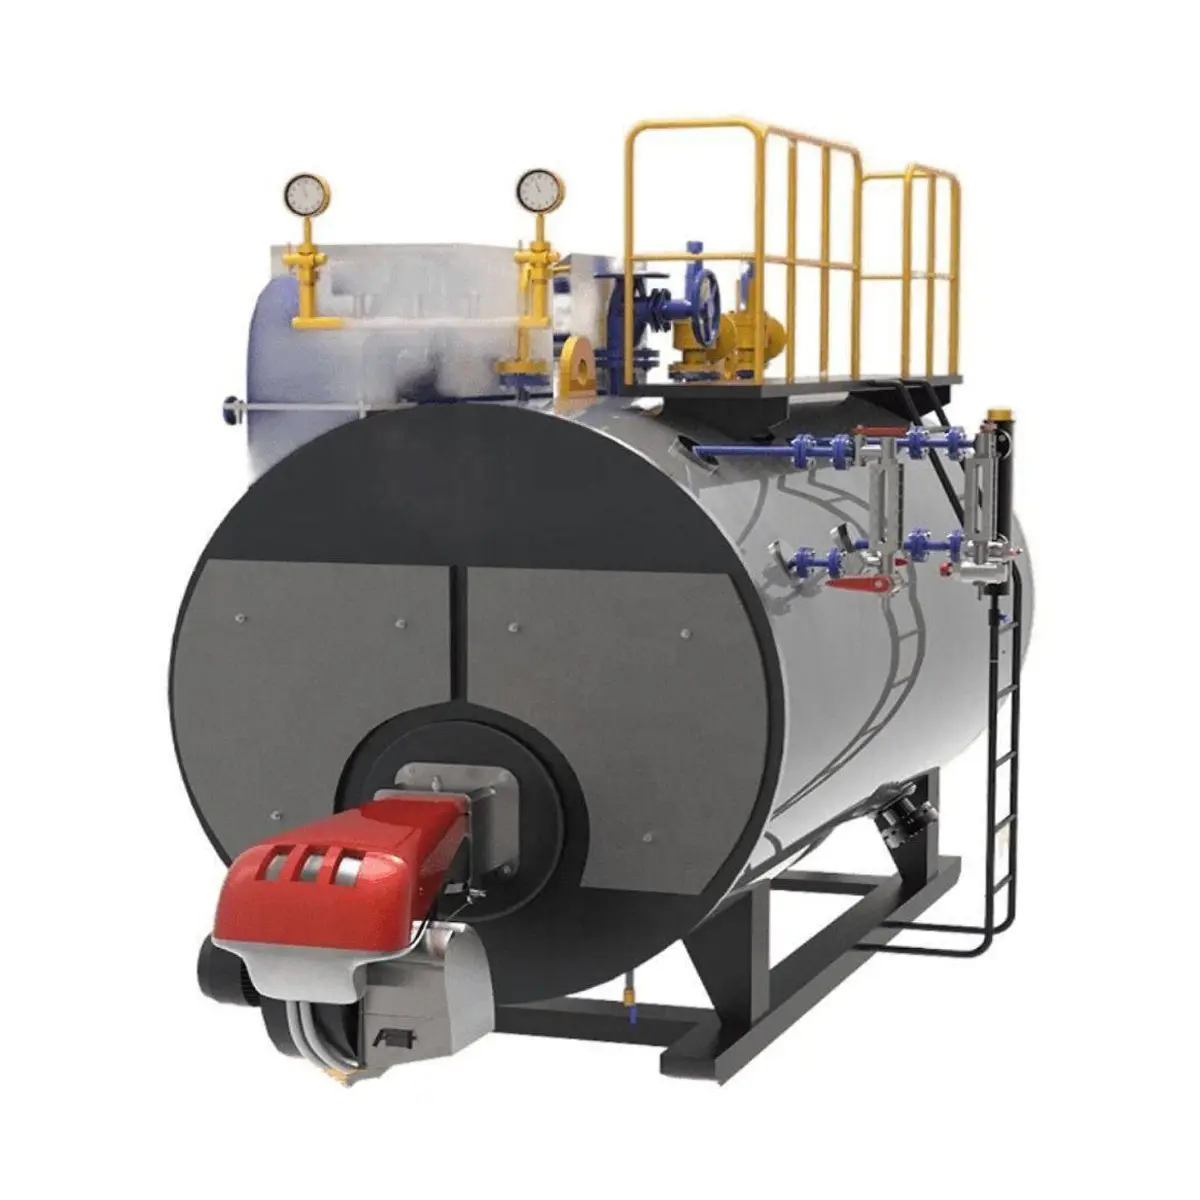 Diskon boiler uap kualitas terbaik 300 kg/jam grosir dari produsen ketel air dan uap